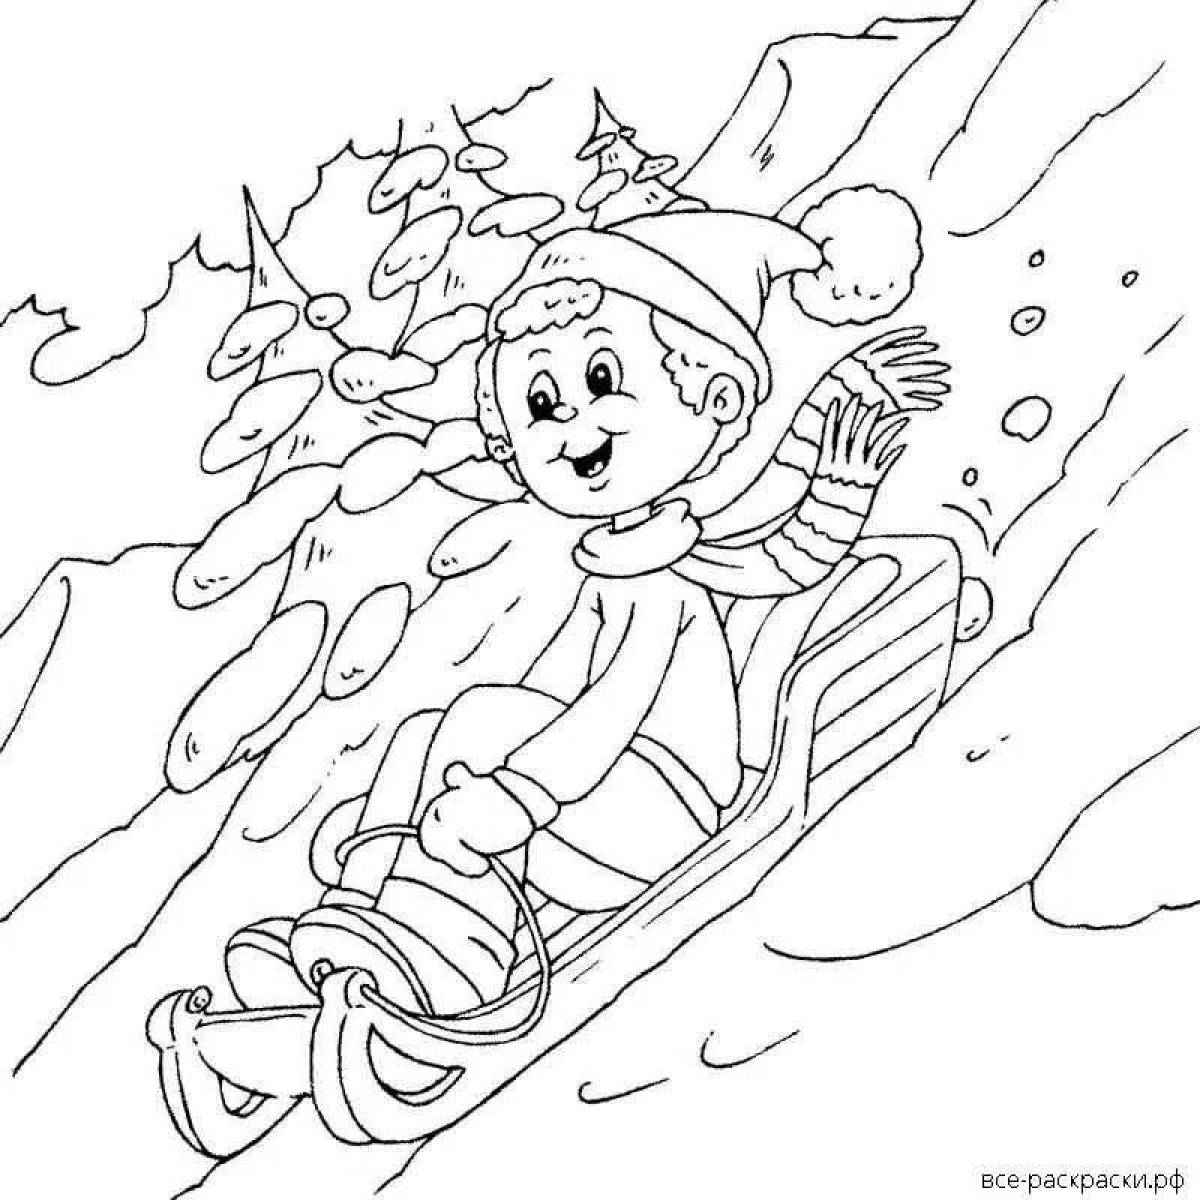 Children sledding #6